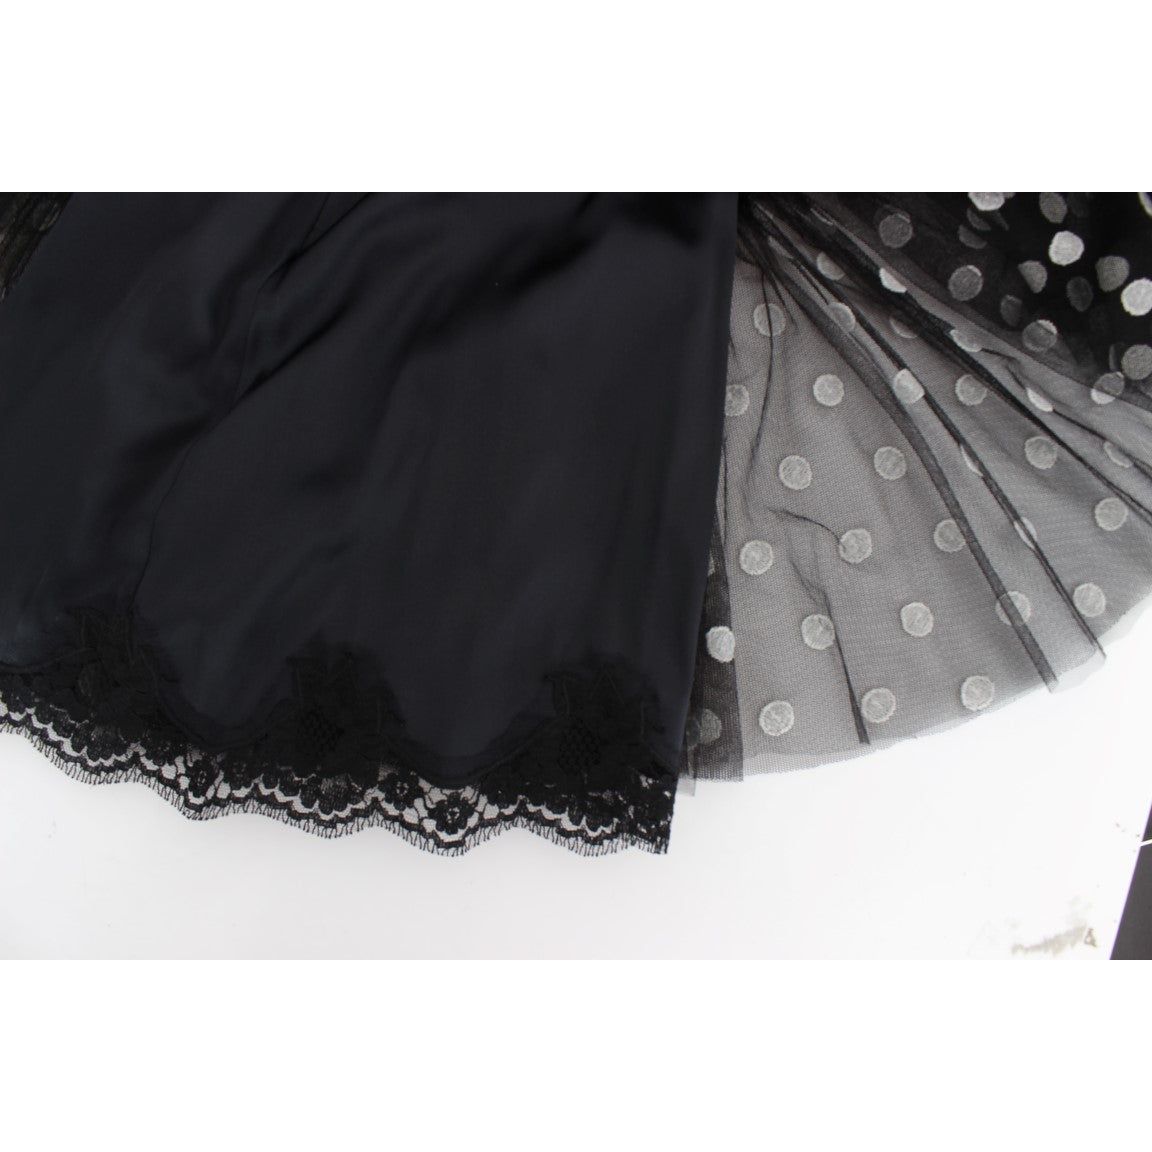 Dolce & Gabbana Elegant Polka Dotted Ruffled Dress black-white-polka-dotted-ruffled-dress